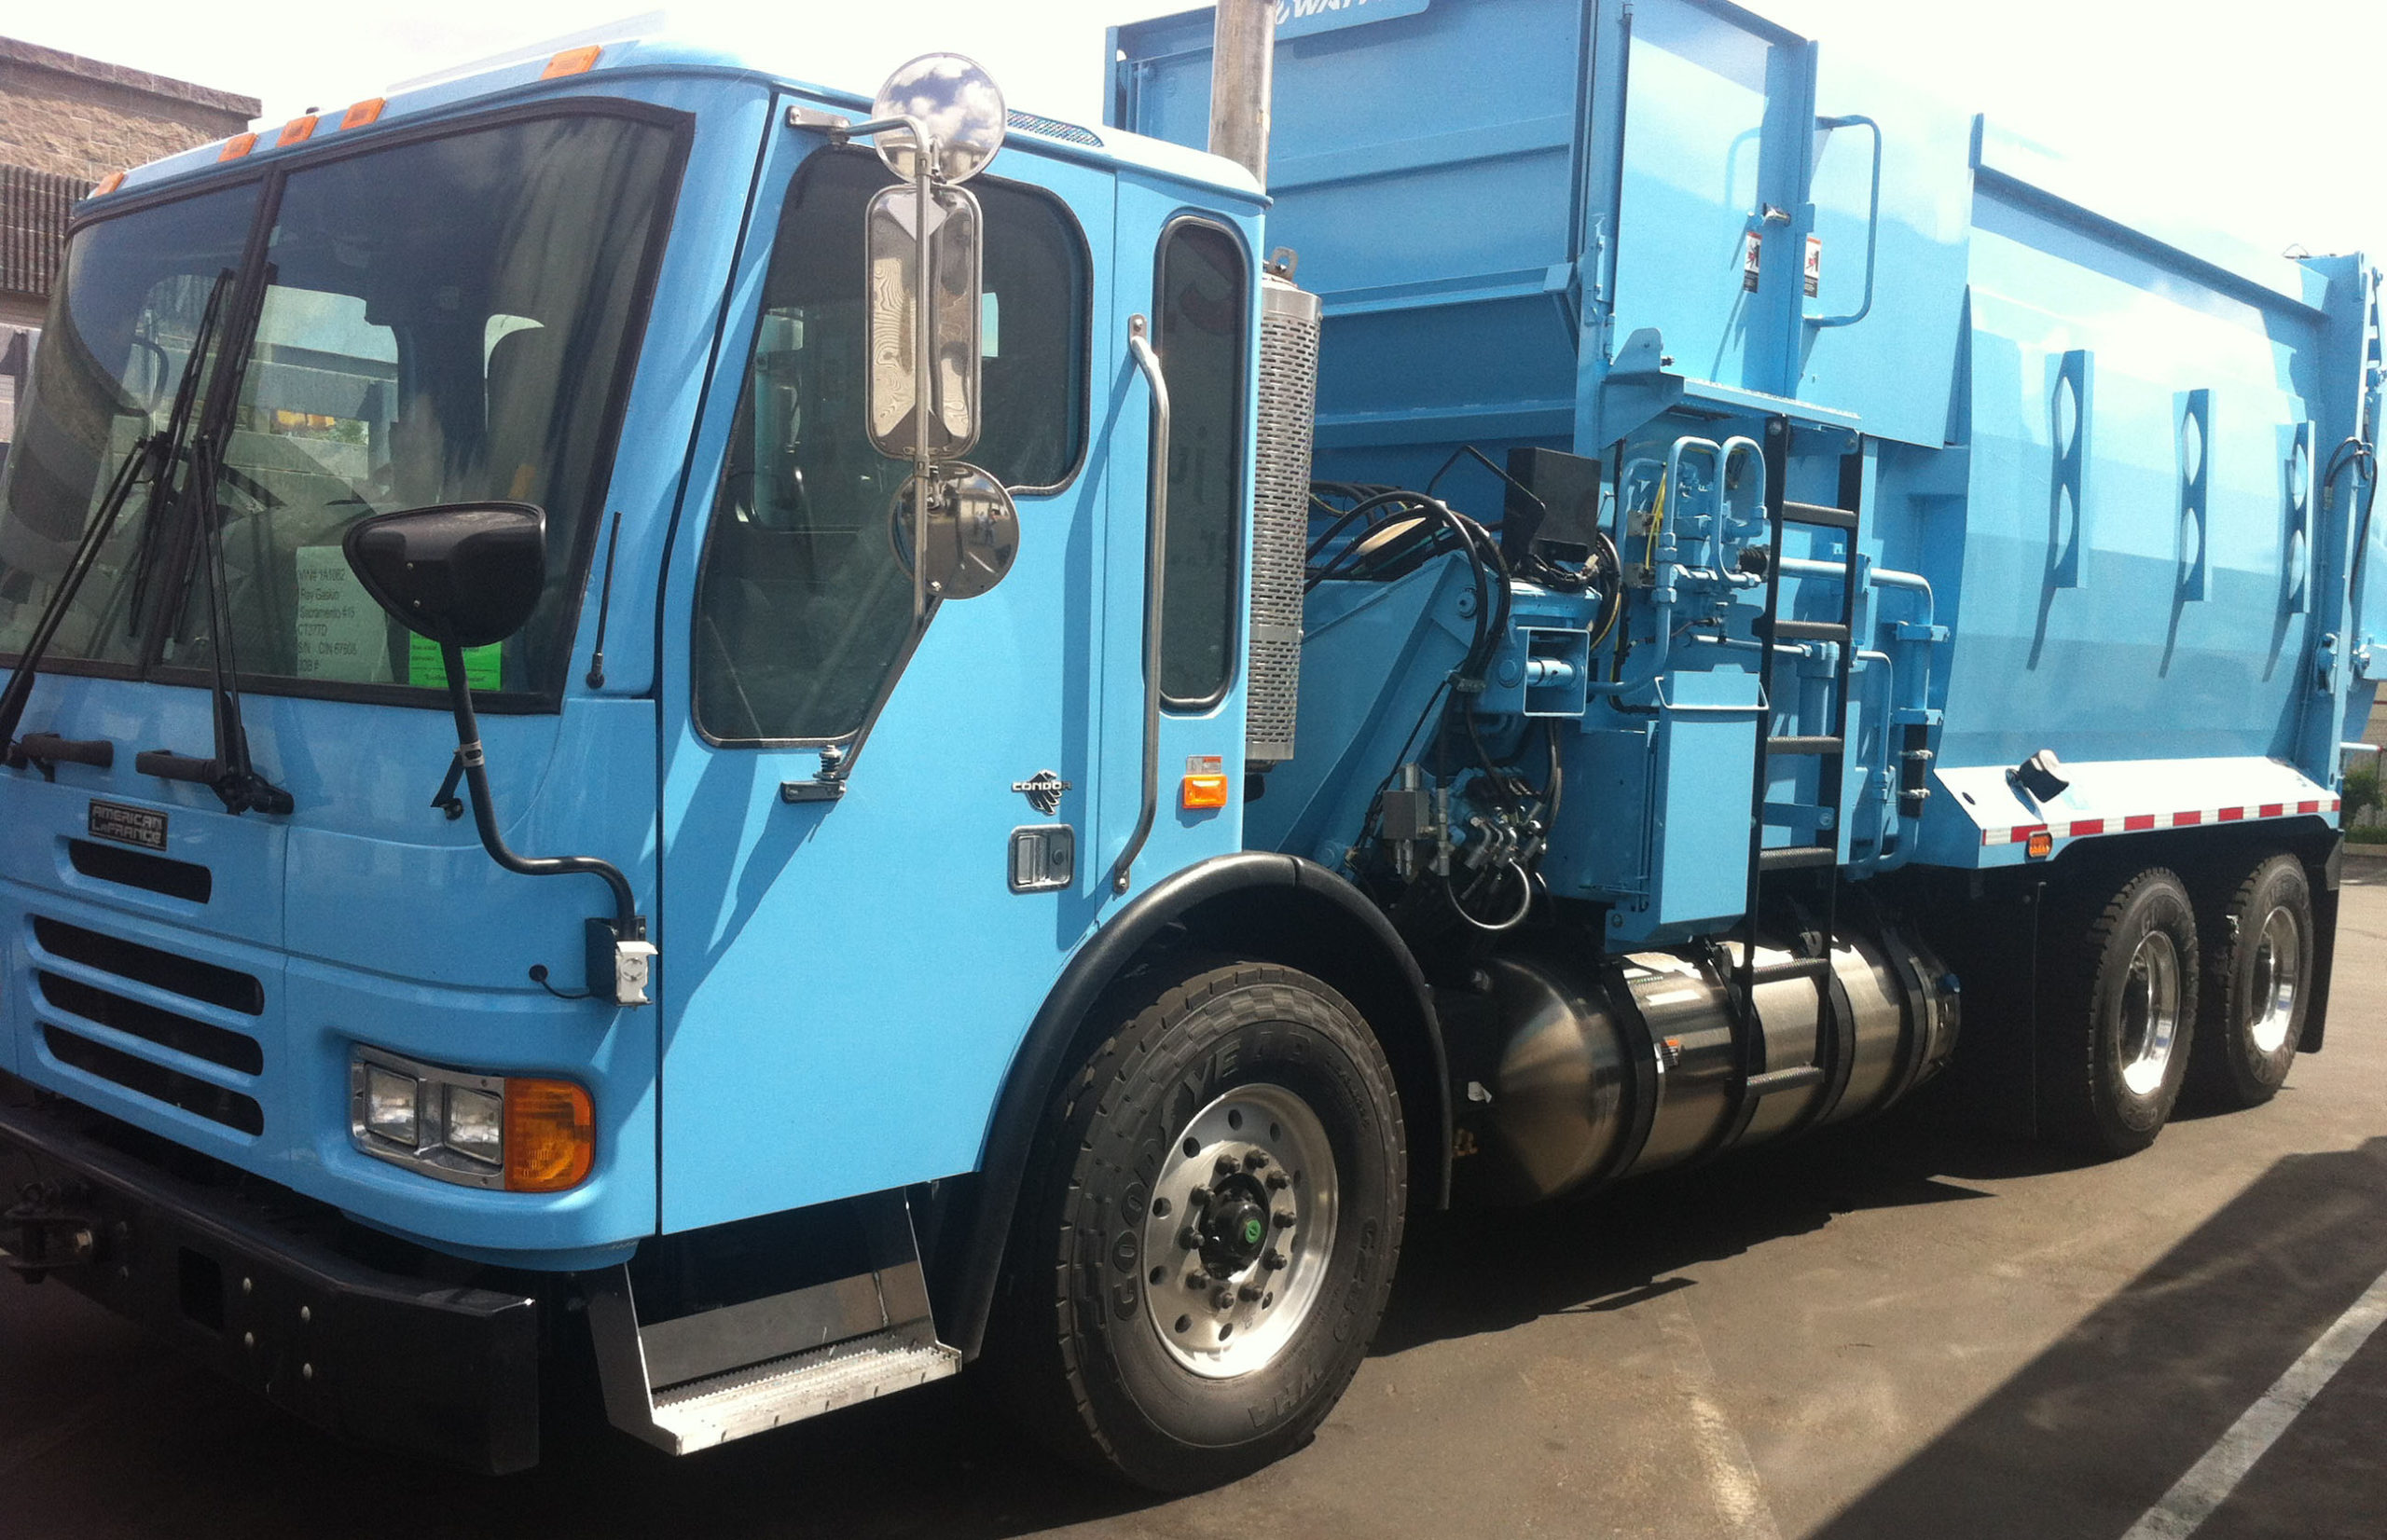 side loader garbage truck | Utilimarc spotlight blog